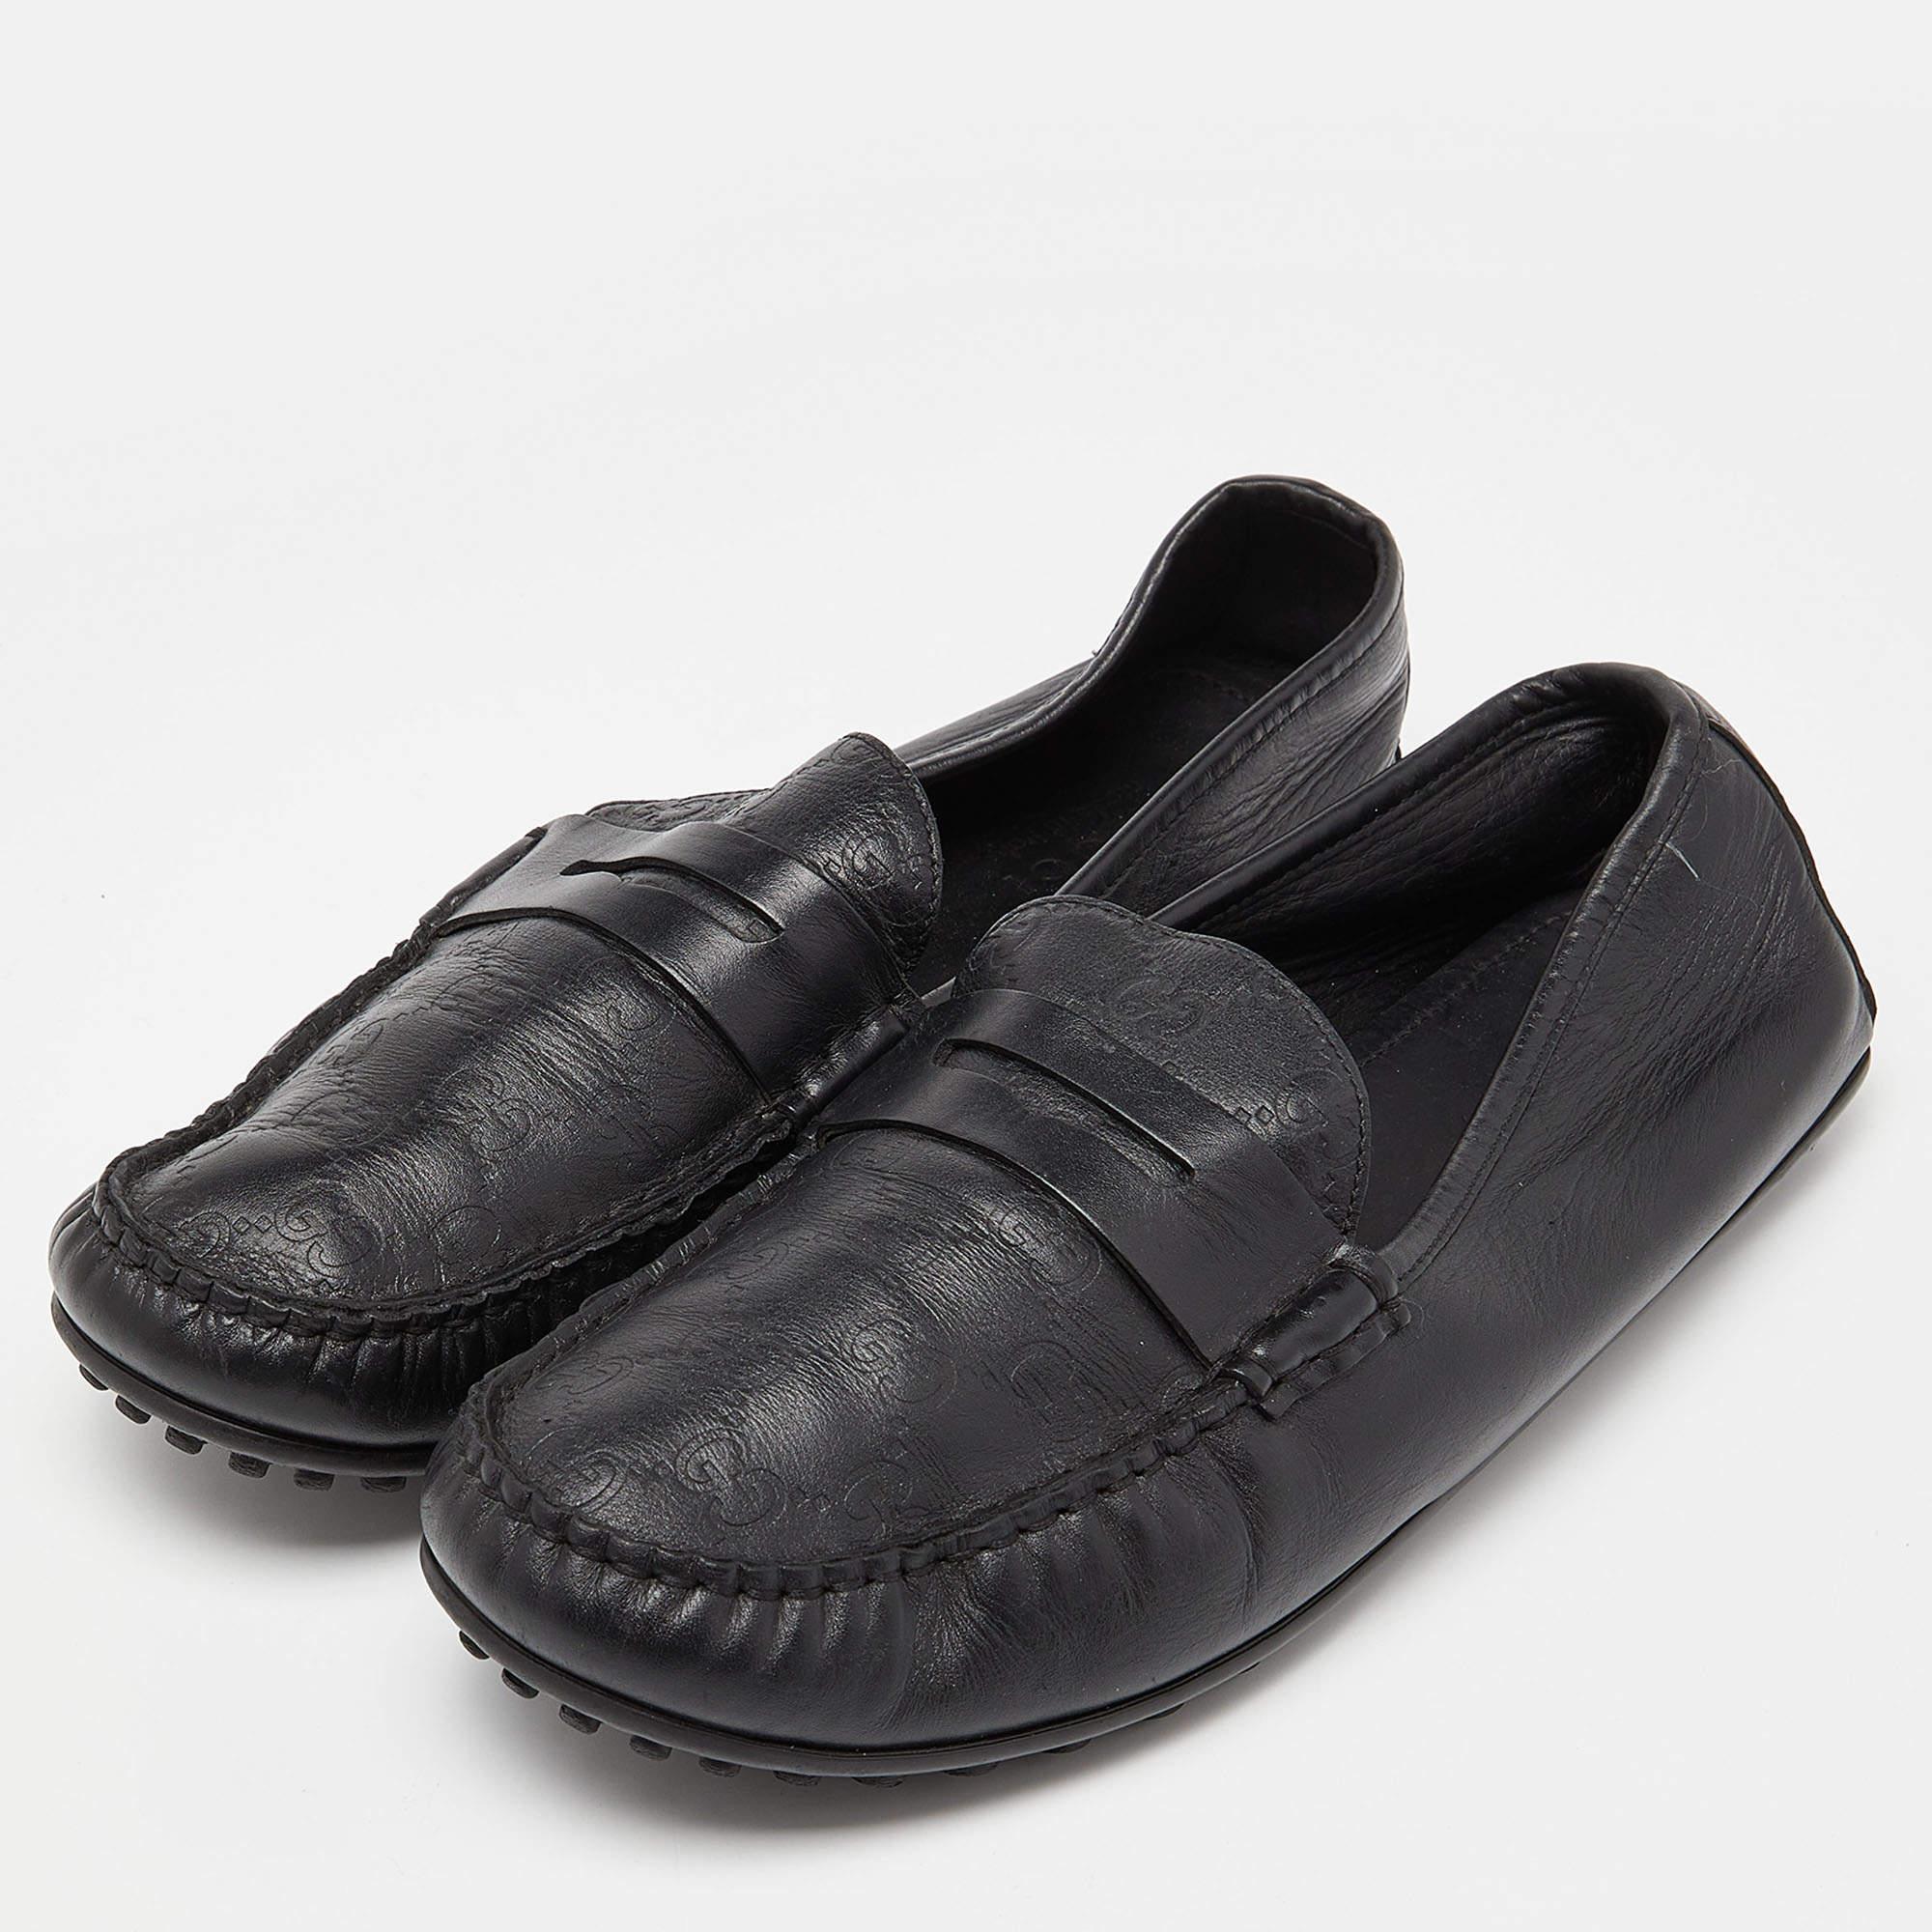 Praktisch, modisch und strapazierfähig - diese Gucci Loafers sind sorgfältig gefertigt, um Ihren täglichen Stil zu begleiten. Sie werden aus den besten MATERIALEN hergestellt und sind ein wertvoller Kauf.

